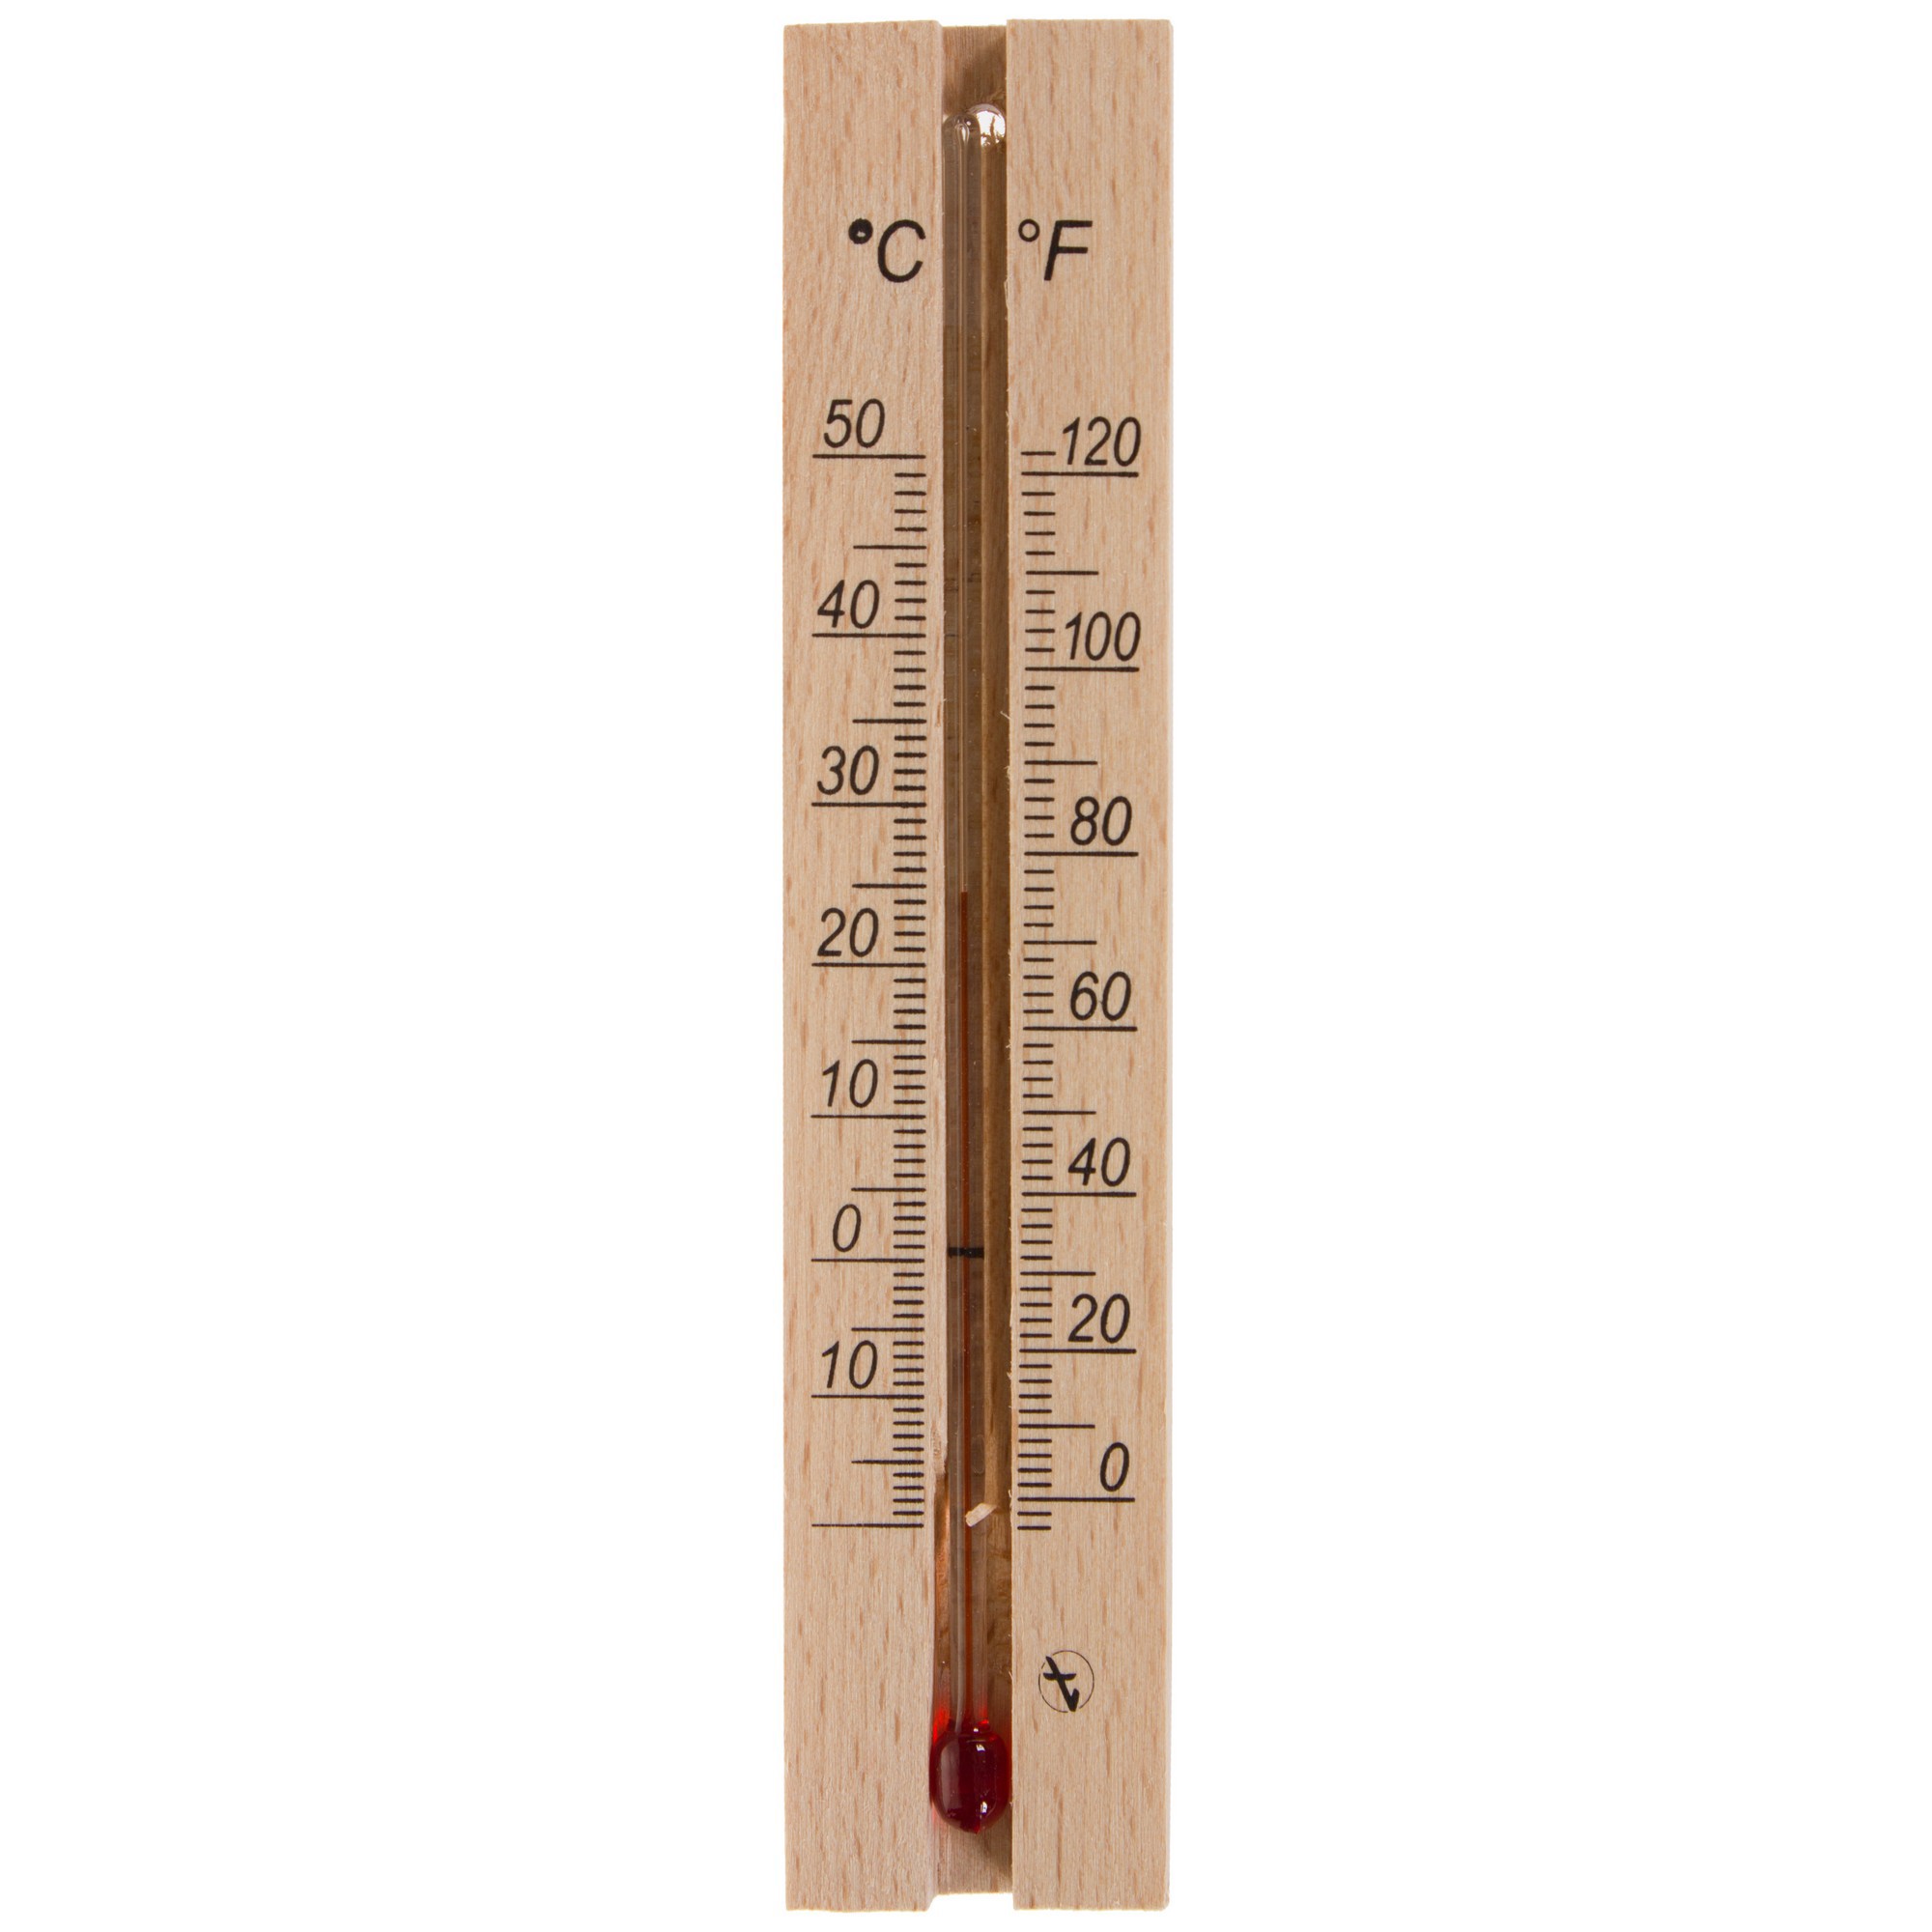 Выбор термометра: что, кроме ртутного и электронного градусника, поможет узнать температуру